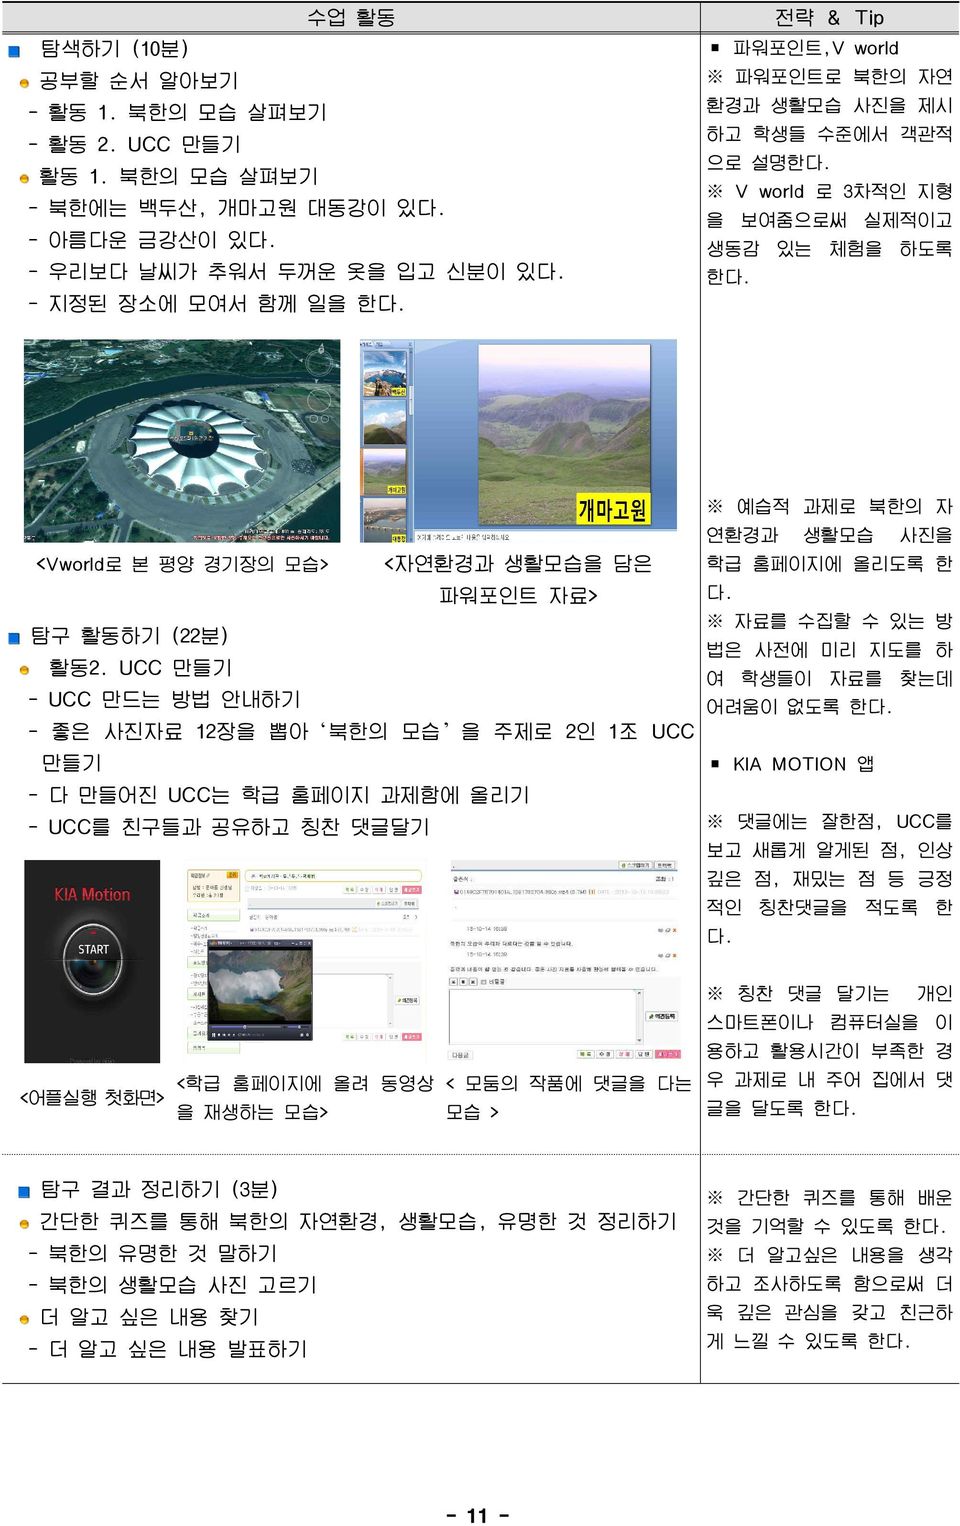 UCC 만들기 - UCC 만드는 방법 안내하기 - 좋은 사진자료 12장을 뽑아 북한의 모습 을 주제로 2인 1조 UCC 만들기 - 다 만들어진 UCC는 학급 홈페이지 과제함에 올리기 - UCC를 친구들과 공유하고 칭찬 댓글달기 예습적 과제로 북한의 자 연환경과 생활모습 사진을 학급 홈페이지에 올리도록 한 다.